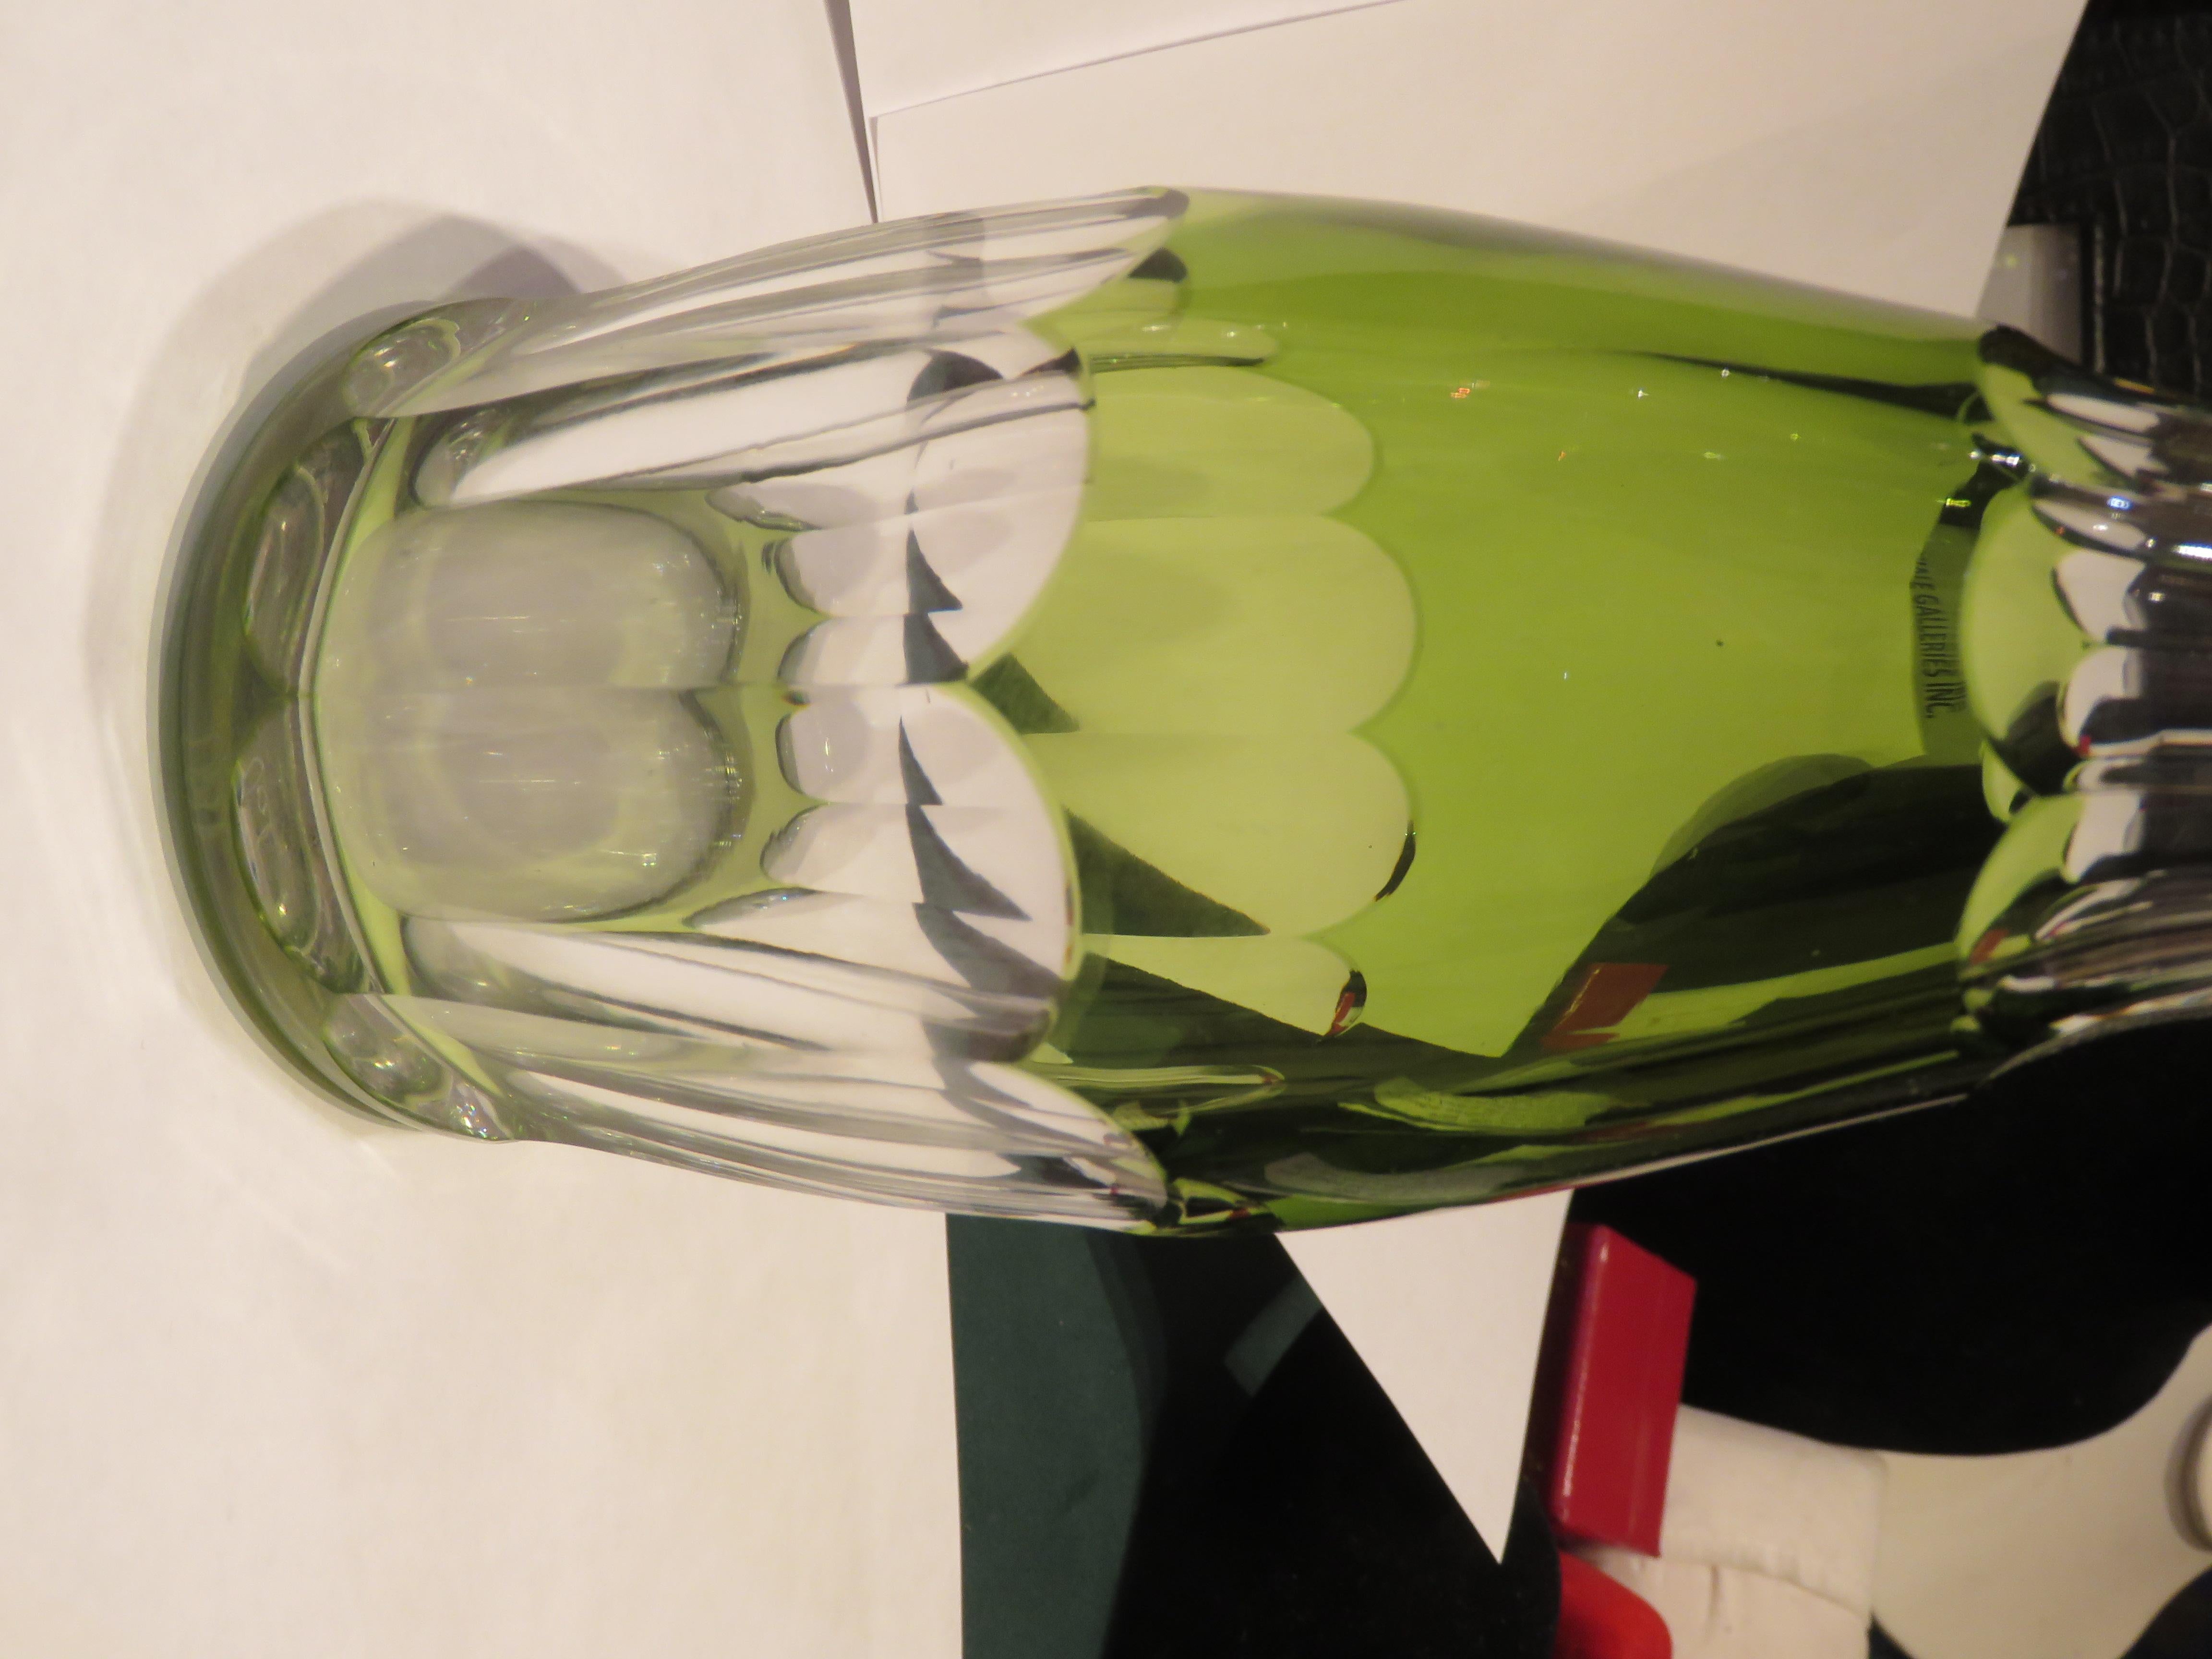 Magnifique carafe à décanter en cristal vert du 19ème siècle. Carafe à décanter en cristal avec bouchon. Magnifiquement réalisé dans le cadre du programme 